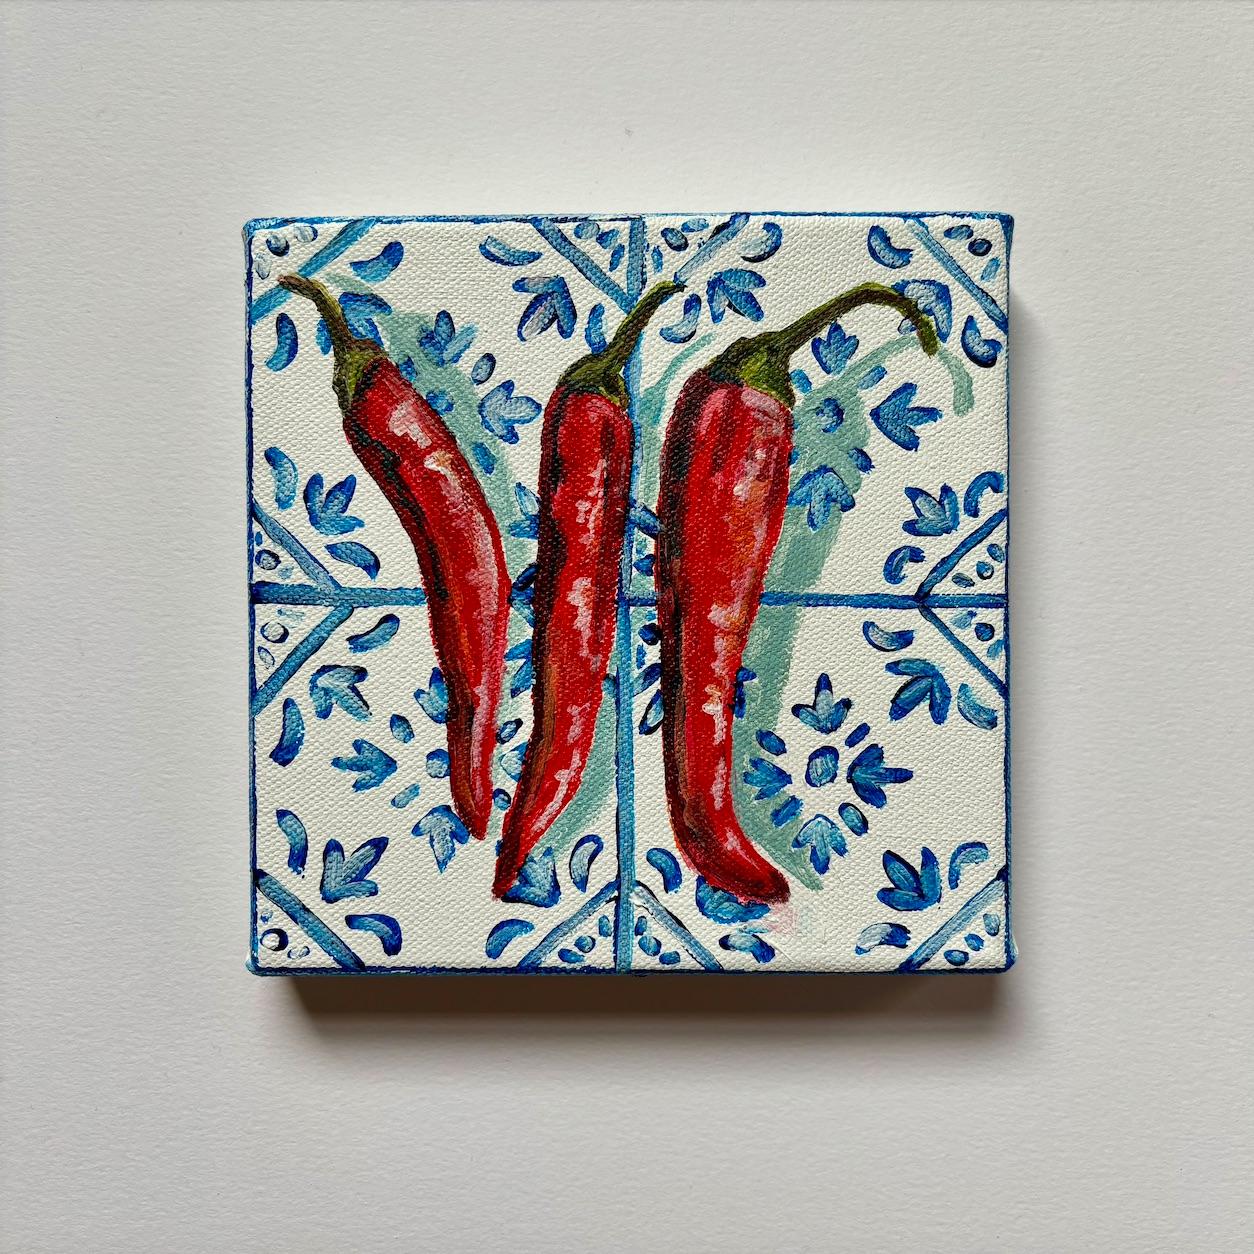 Dieses zeitgenössische Stillleben zeigt drei scharfe Chilischoten auf blauen und weißen mediterranen Fliesen. Diese Leinwand ist Teil meiner MINI Tiles-Serie und kann ungerahmt aufgehängt werden. Inspiriert von der Küche meiner Abuela zu